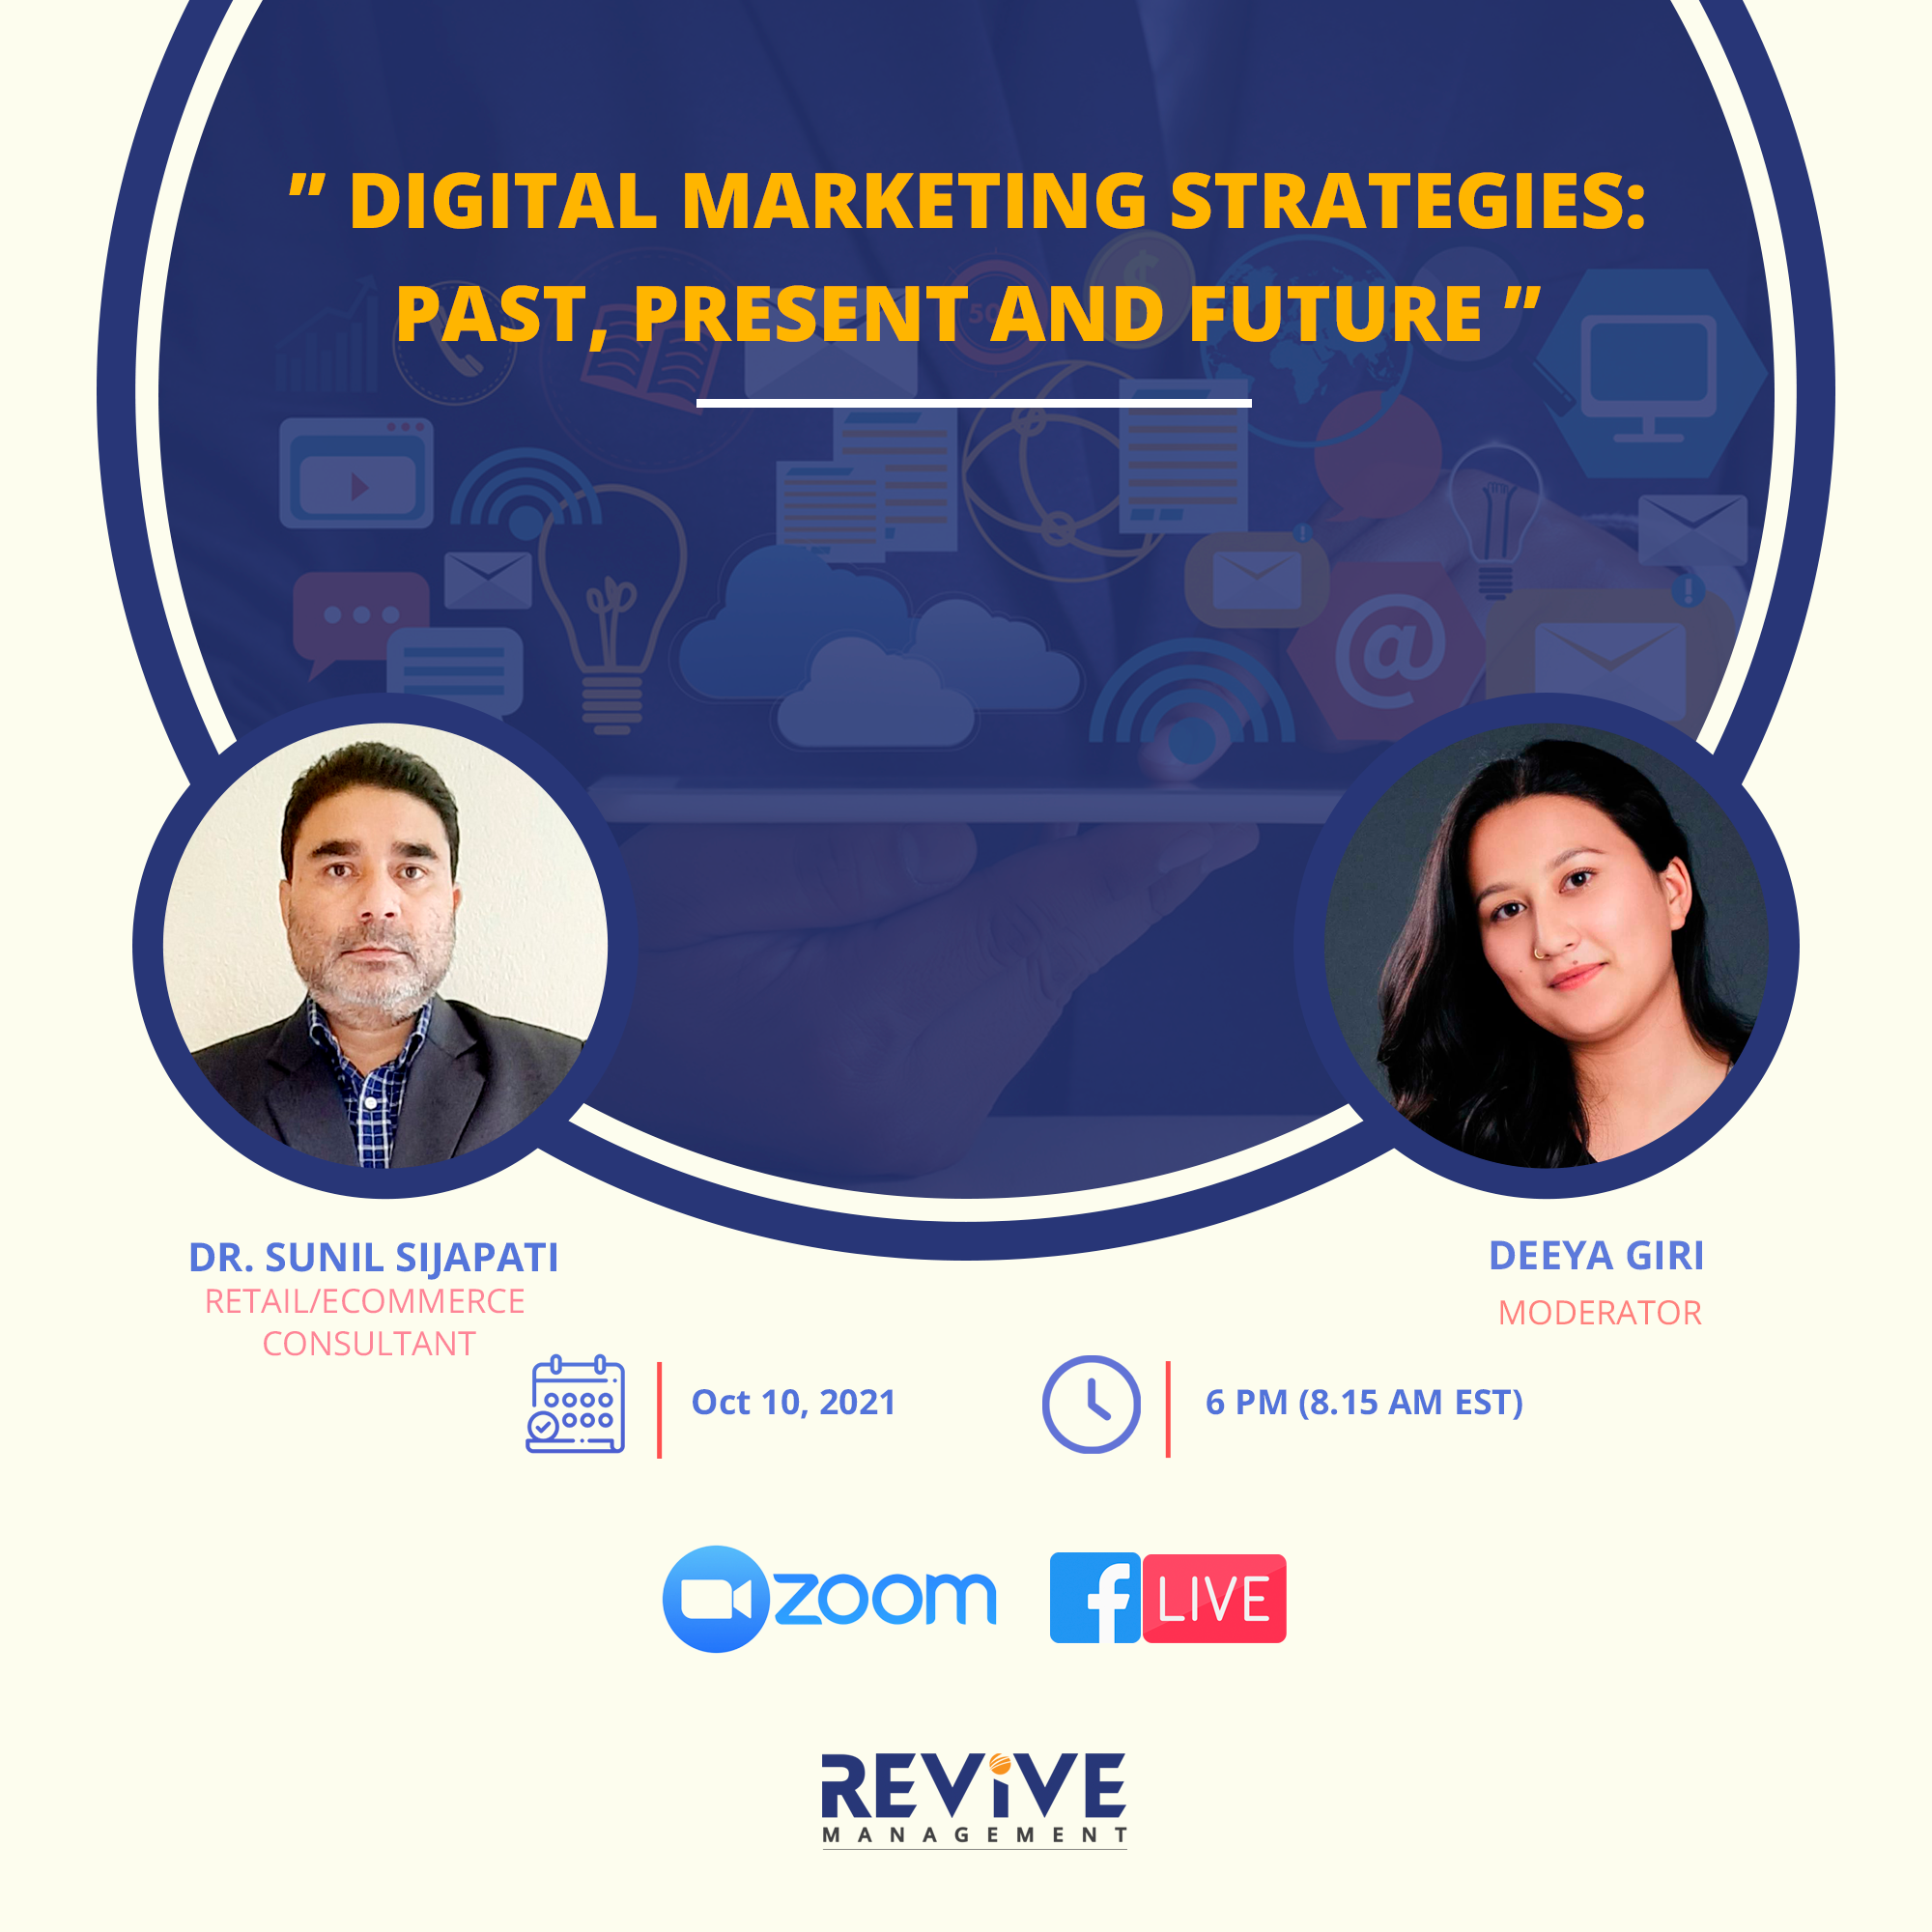 Digital Marketing Strategies: Past, Present, Future